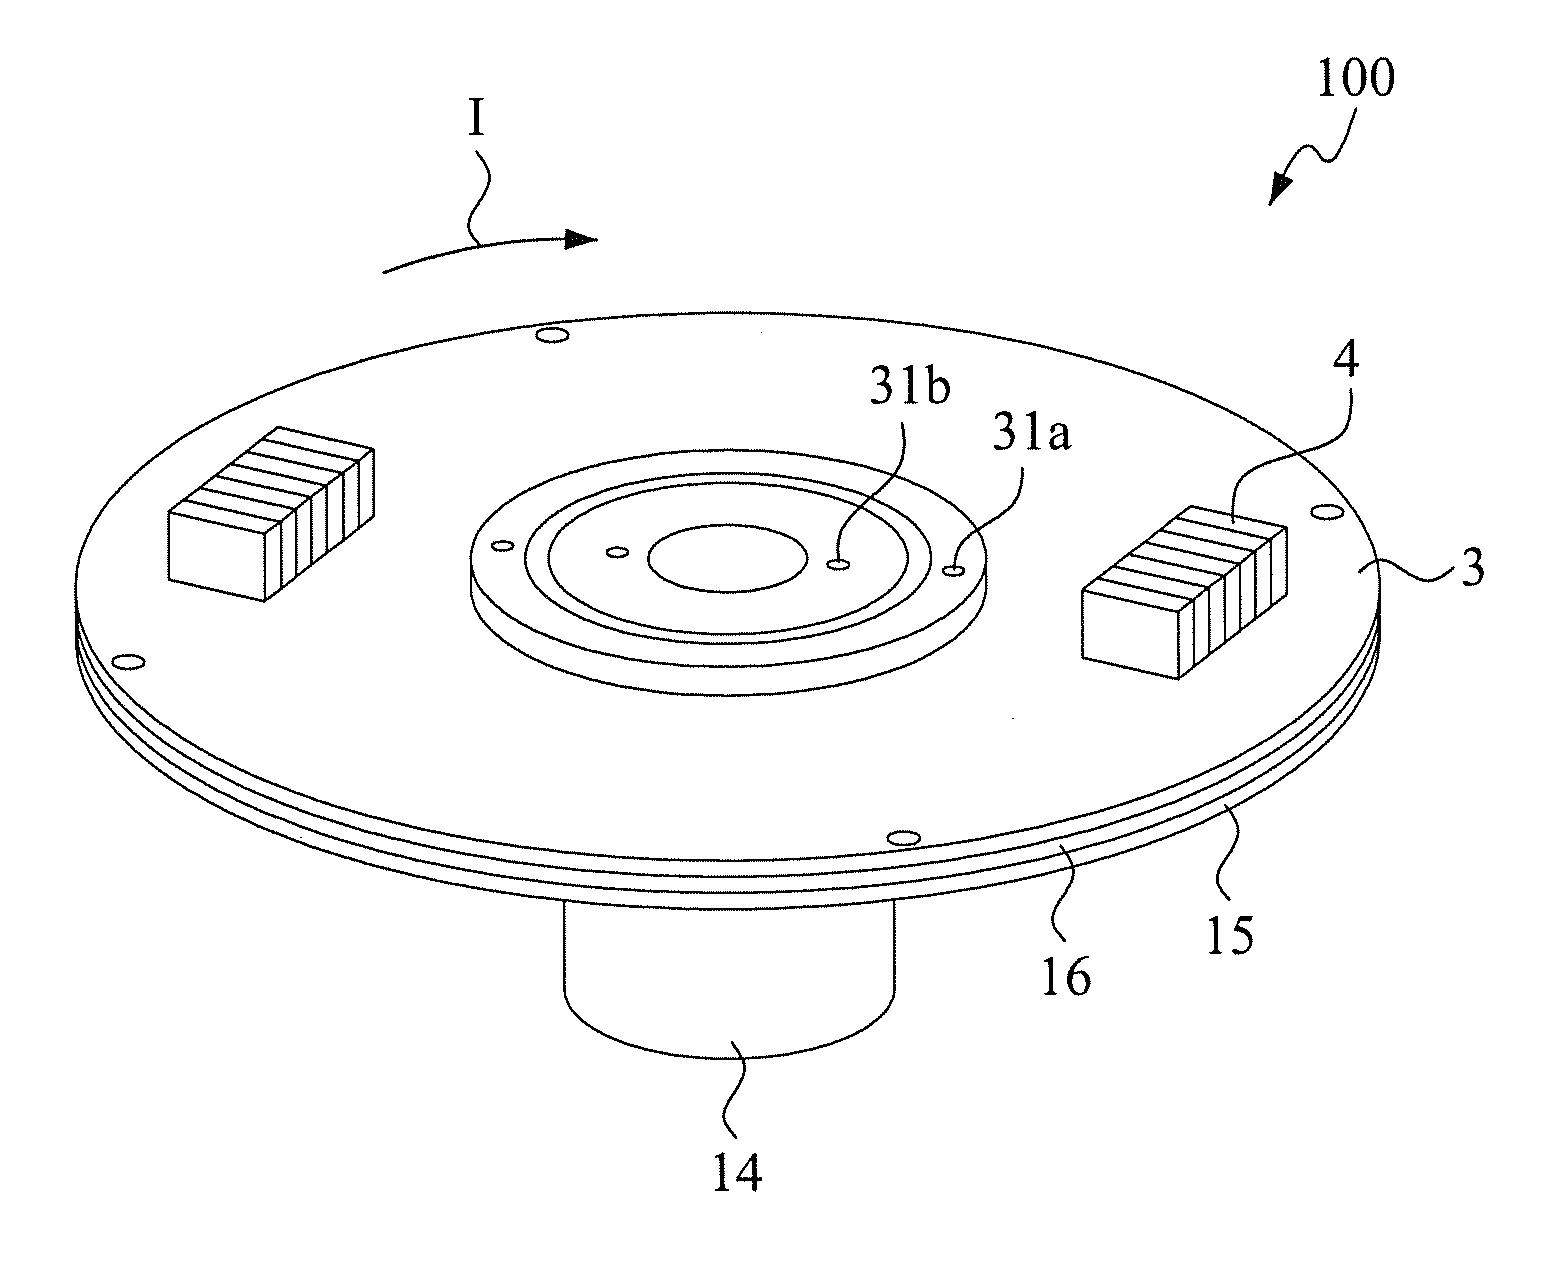 Disk-based fluid sample separation device